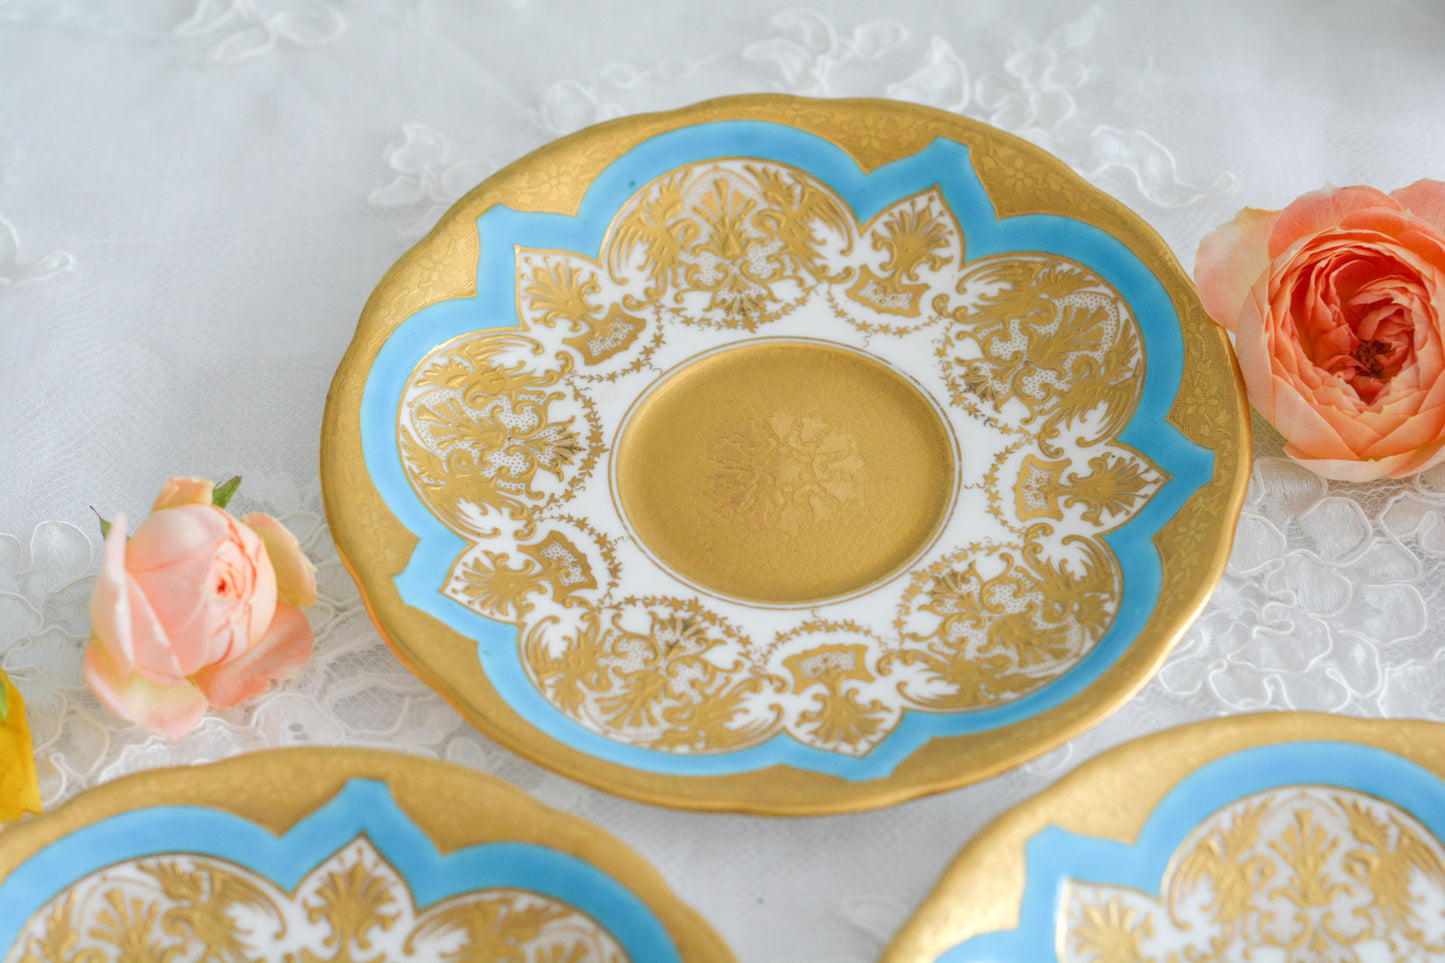 コールポートの金盛りとターコイズブルーの美しいソーサー。立体的な金彩が大変美しいです。Rose Antiquesは英国アンティーク、英国ヴィンテージ食器をご紹介しています。